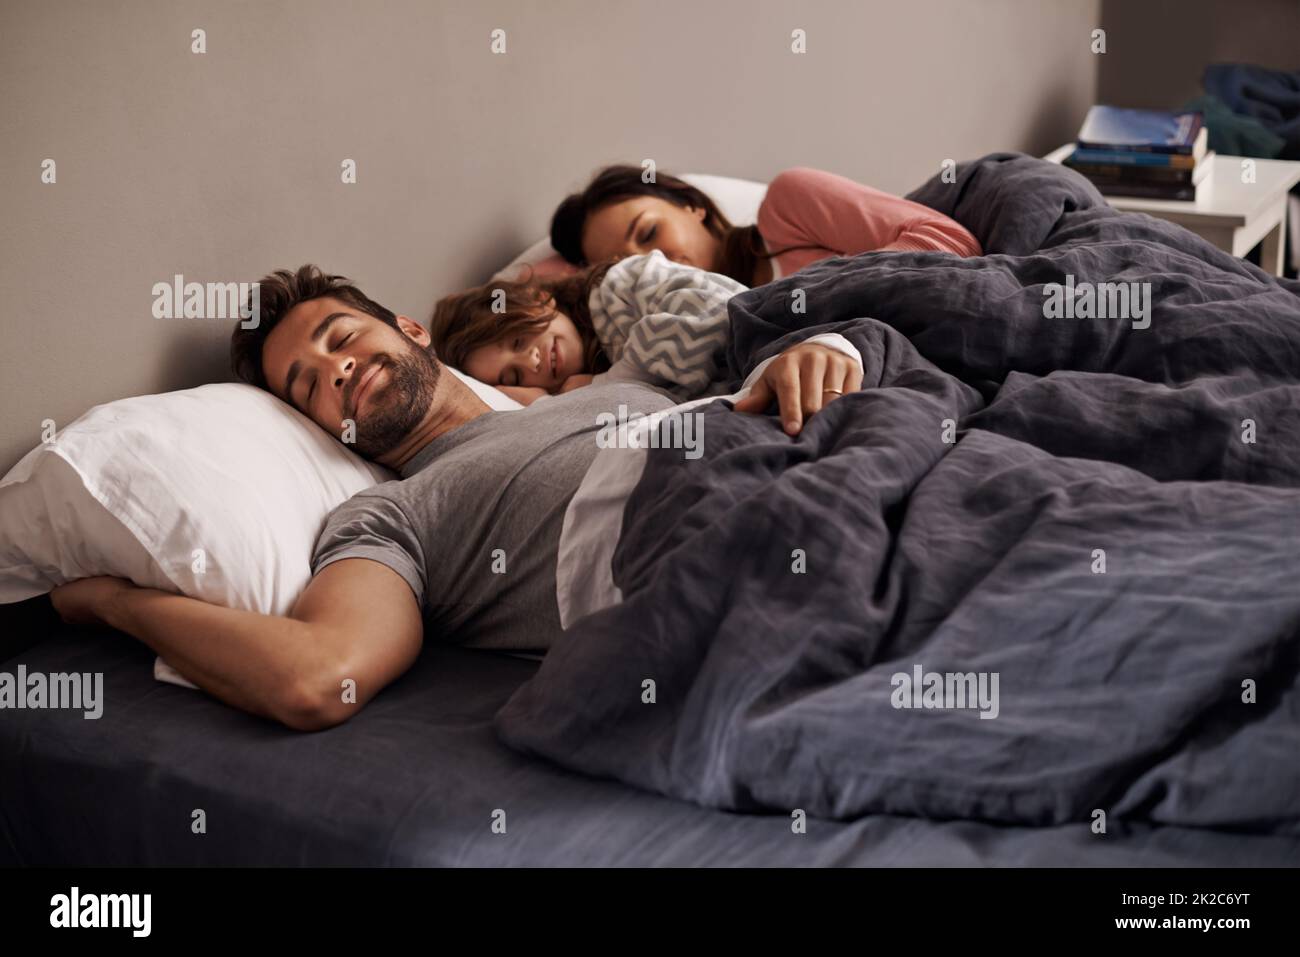 Das ist Glückseligkeit Aufnahme eines kleinen Mädchens, das neben ihren Eltern im Bett schläft. Stockfoto